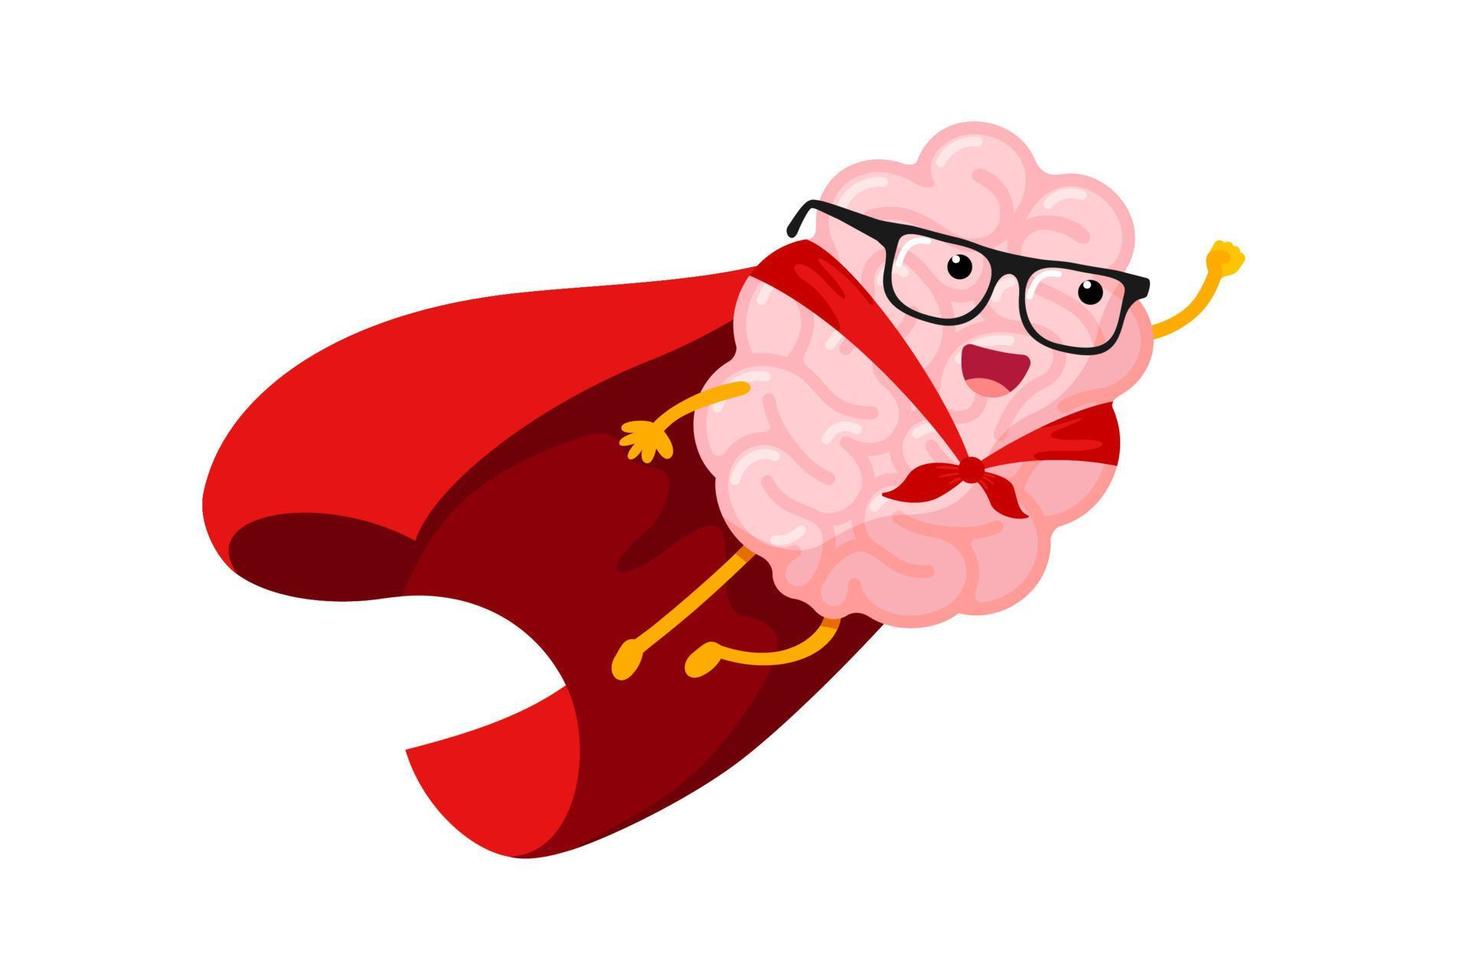 el cerebro humano de dibujos animados vuela en el cielo como superhéroe. inteligente superhéroe mascota del sistema nervioso central con gafas en abrigo rojo. inspiración del carácter del órgano de la mente humana. lluvia de ideas y concepto de idea. vector